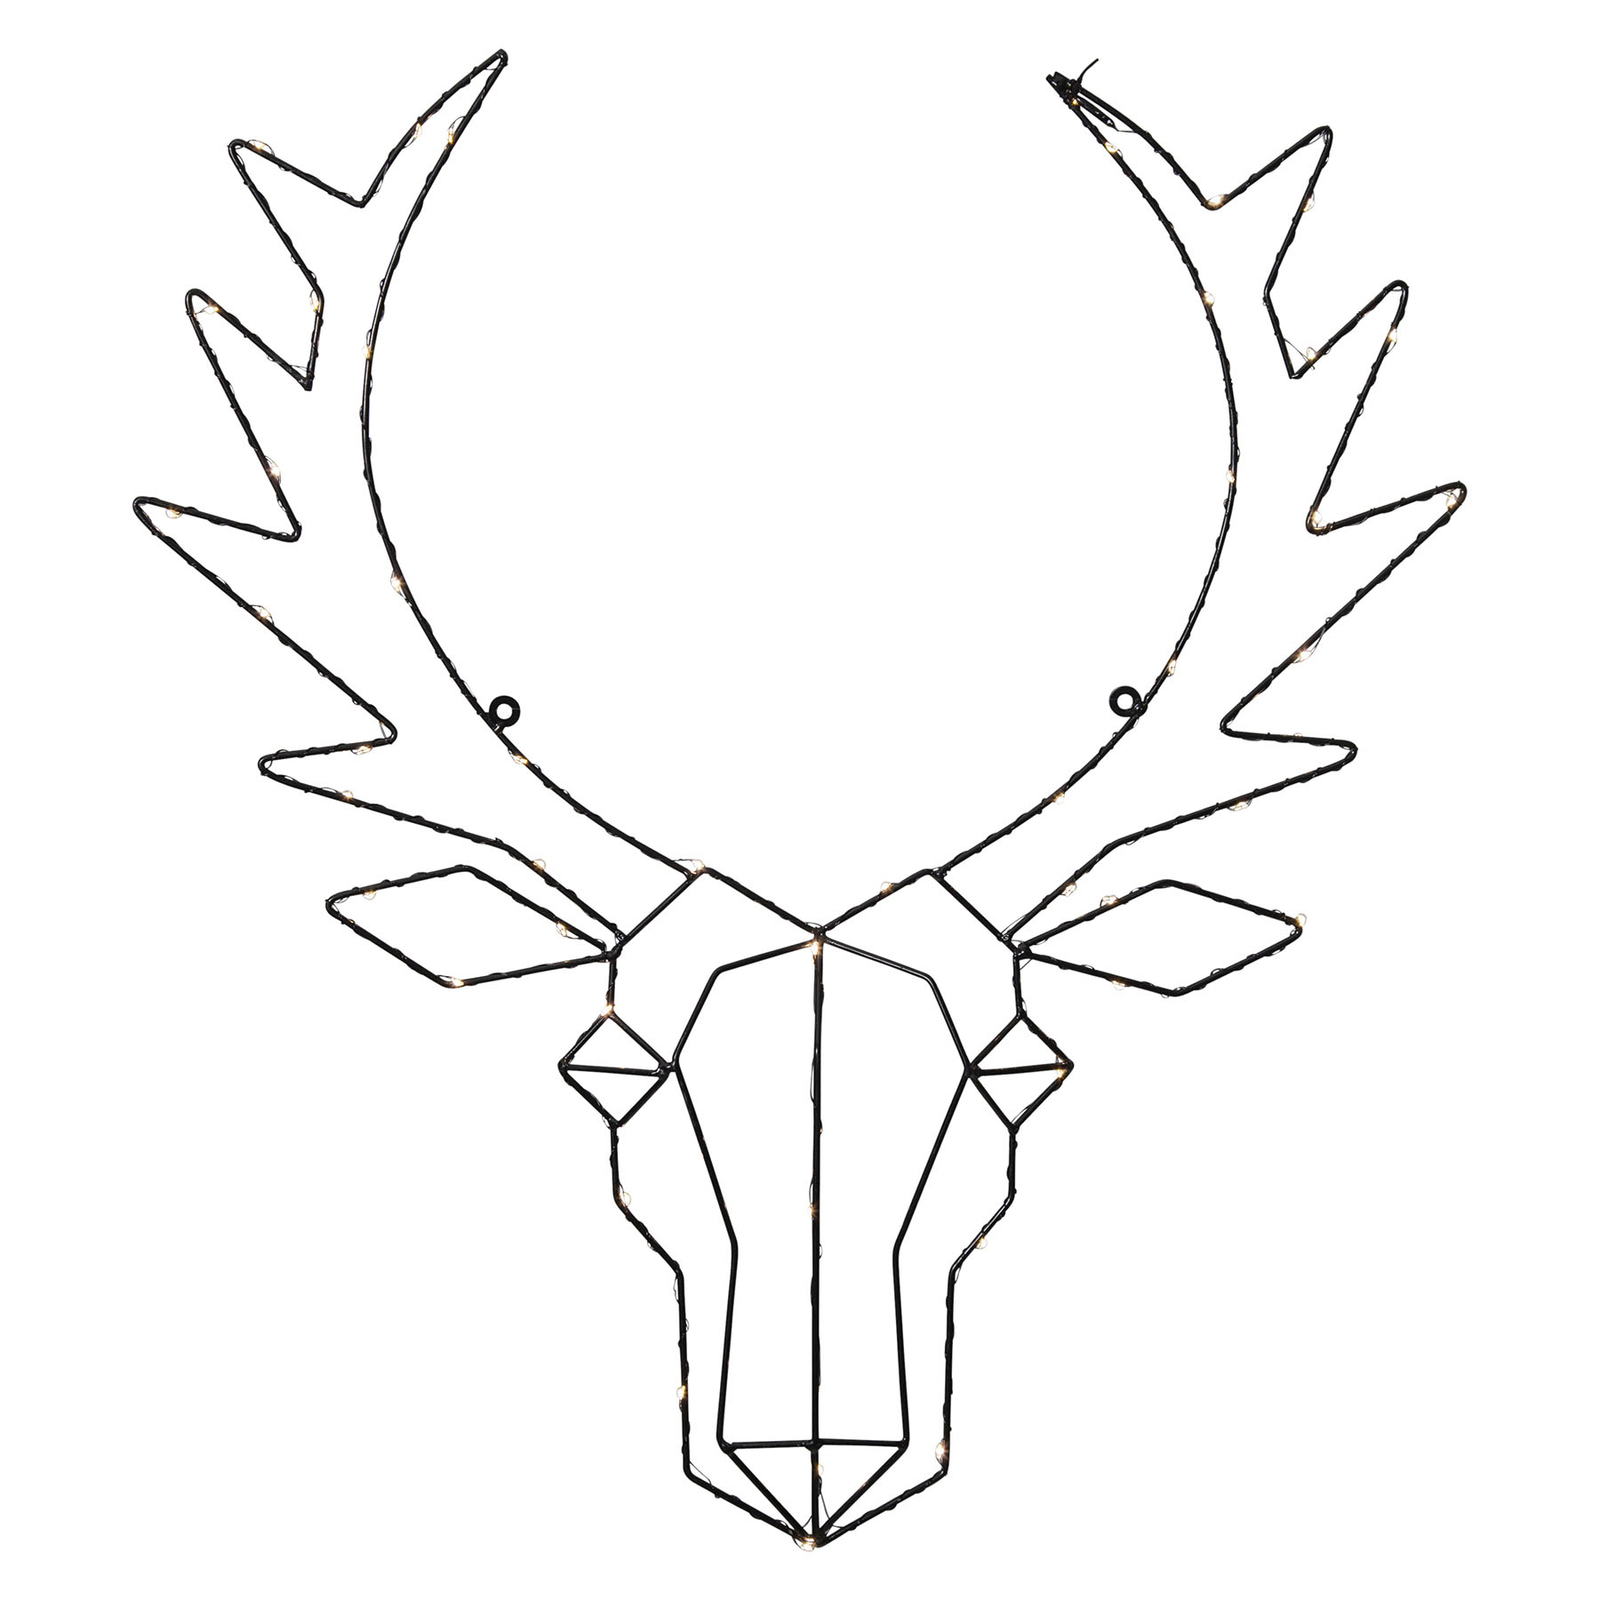 Cupid LED decorative light, reindeer head